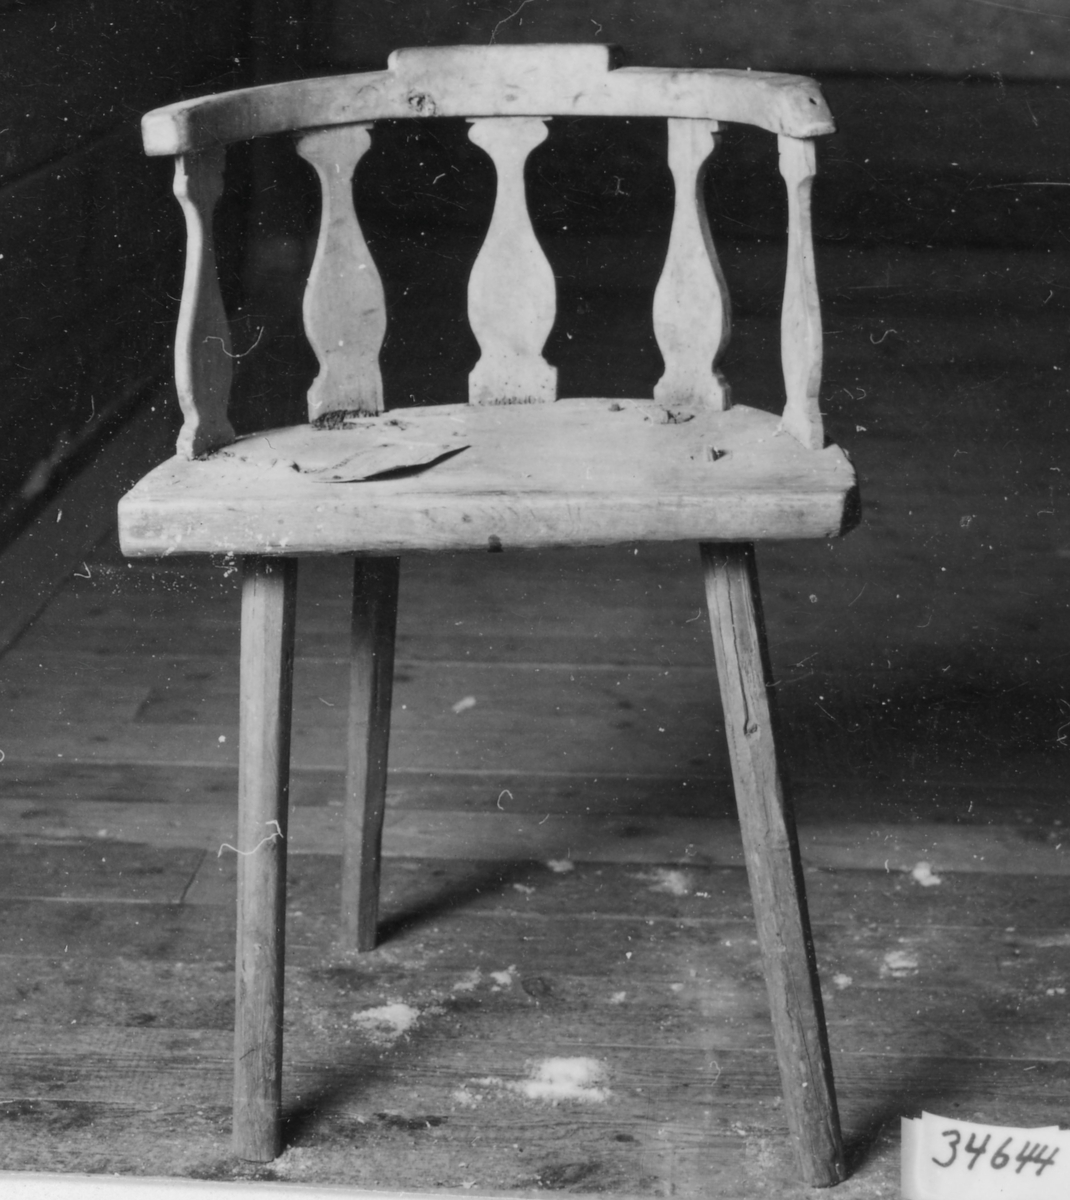 Omålad stol med fyra 8-sidiga intappade ben något utställda. Halvcirkelformad sits, rundad rygg med 5 vertikala balusterformade spjälor sammanfogade med rundat krön, Sitsen förstärkt med påspikat  järnband.